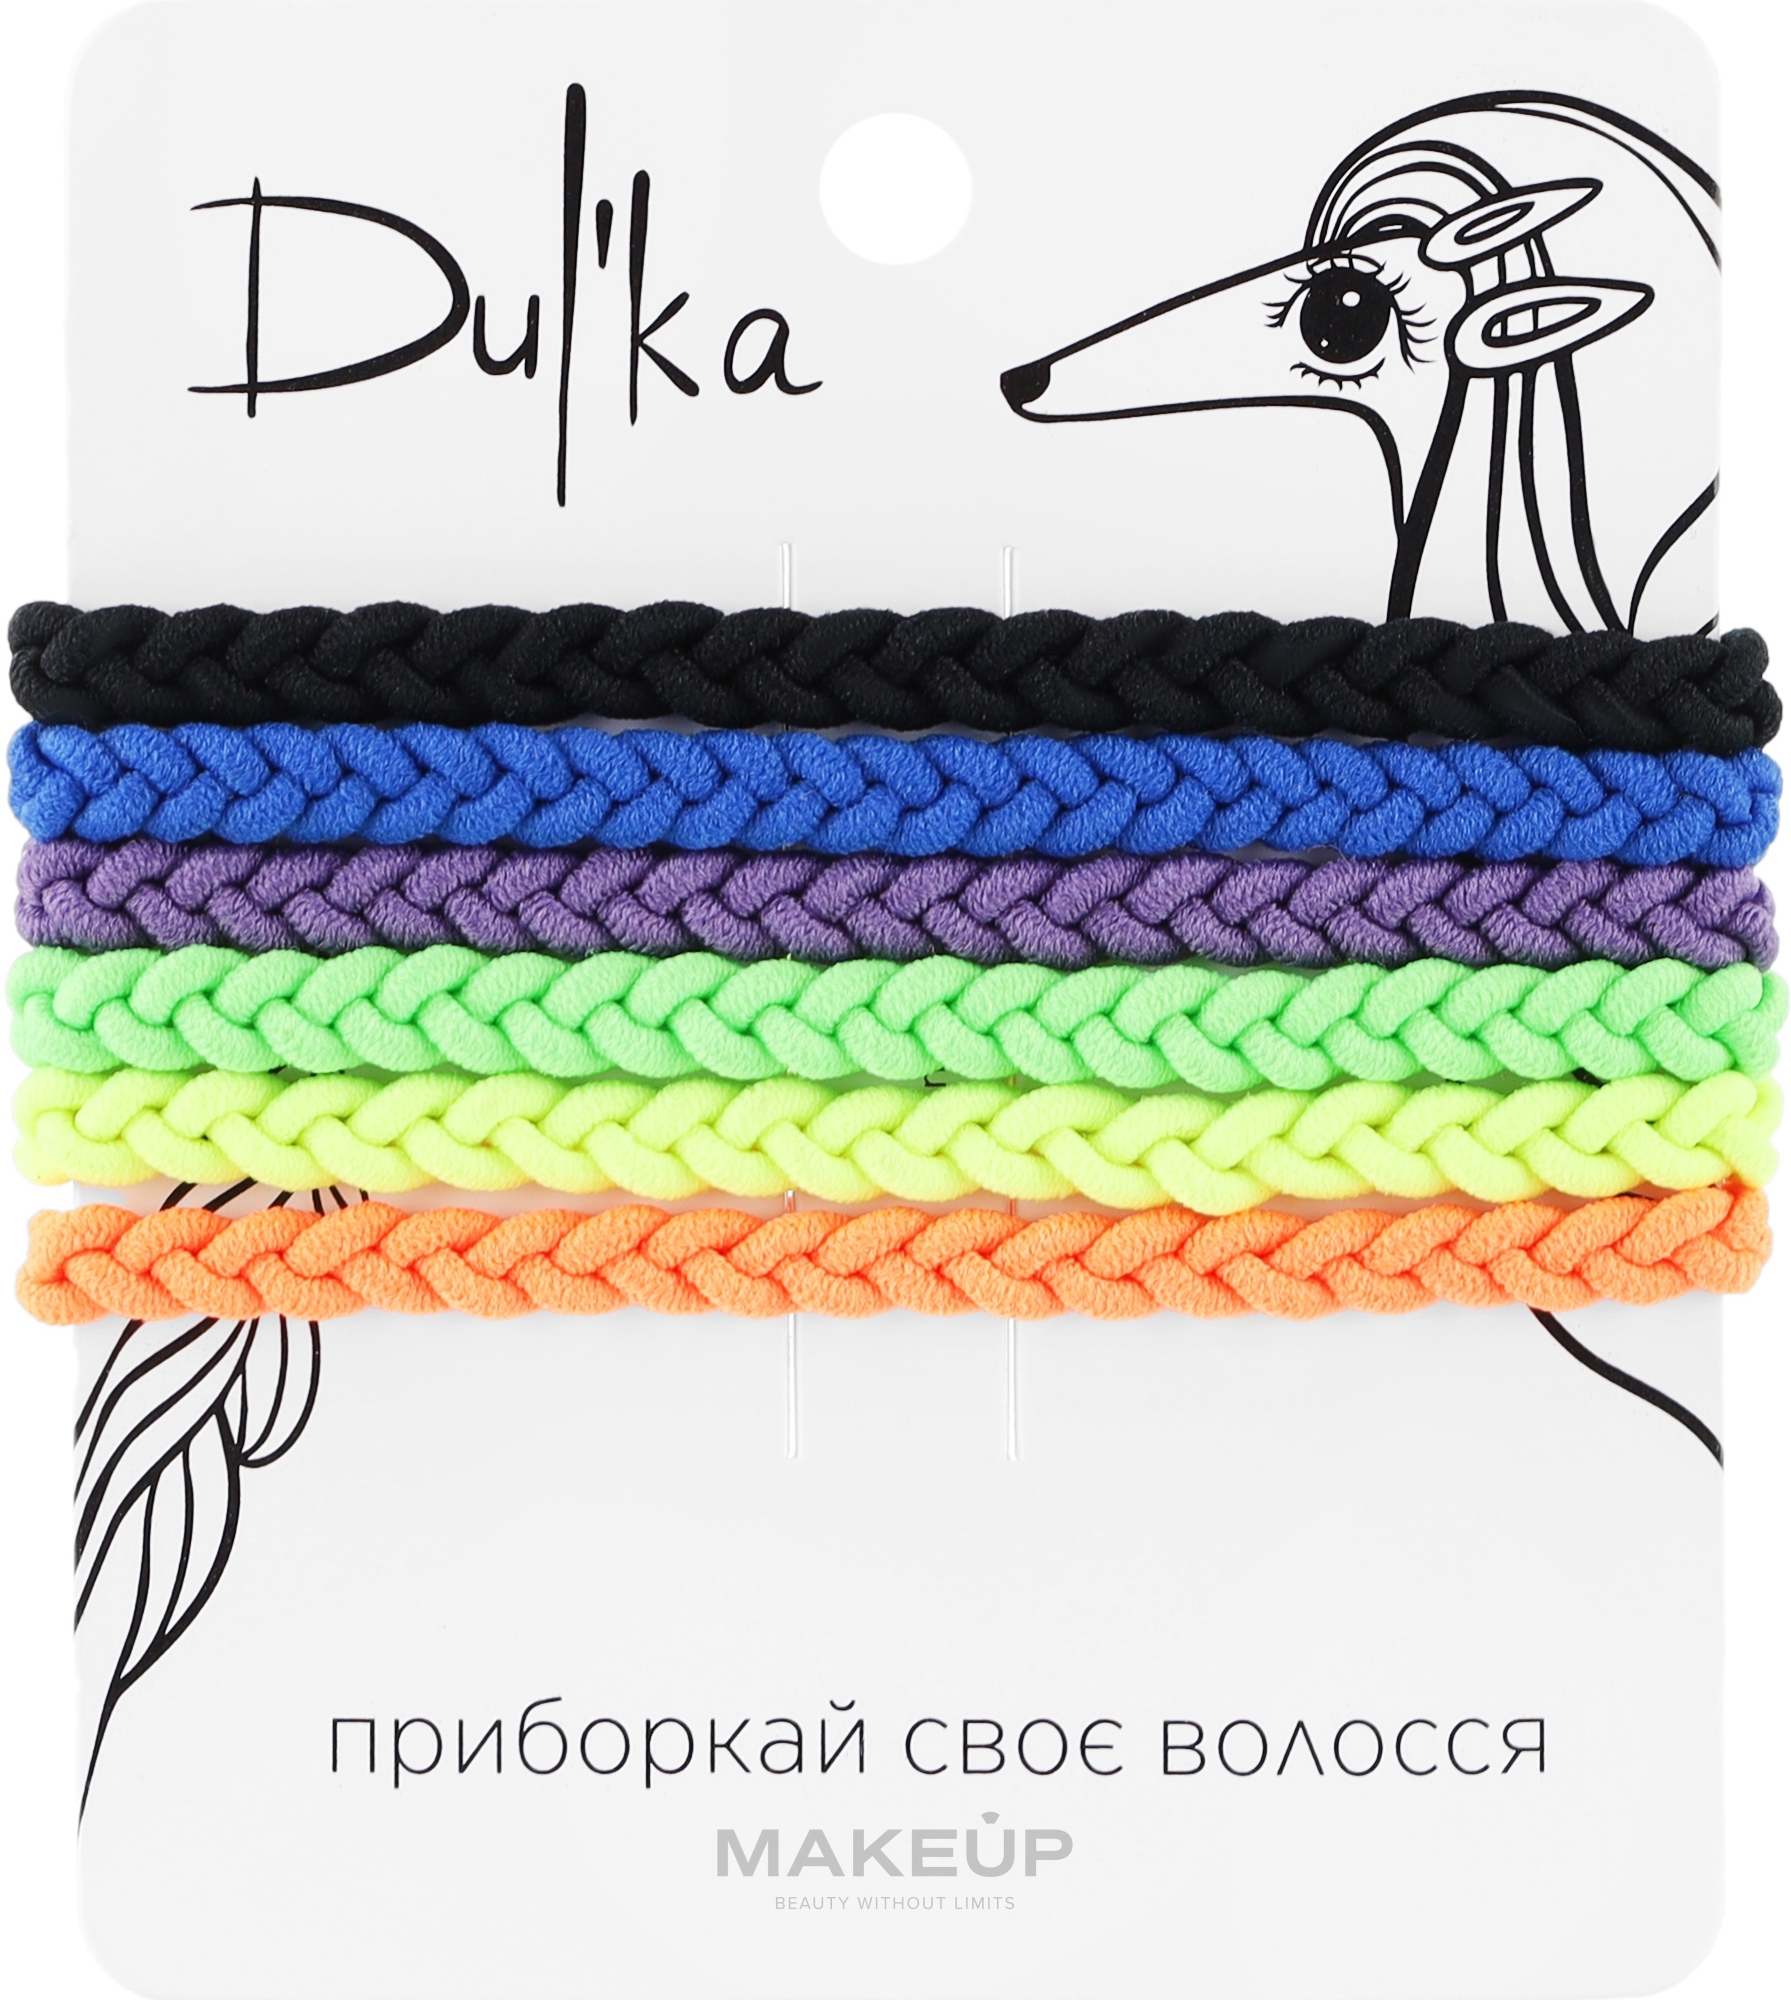 Набор разноцветных резинок для волос UH717723, 6 шт - Dulka  — фото 6шт